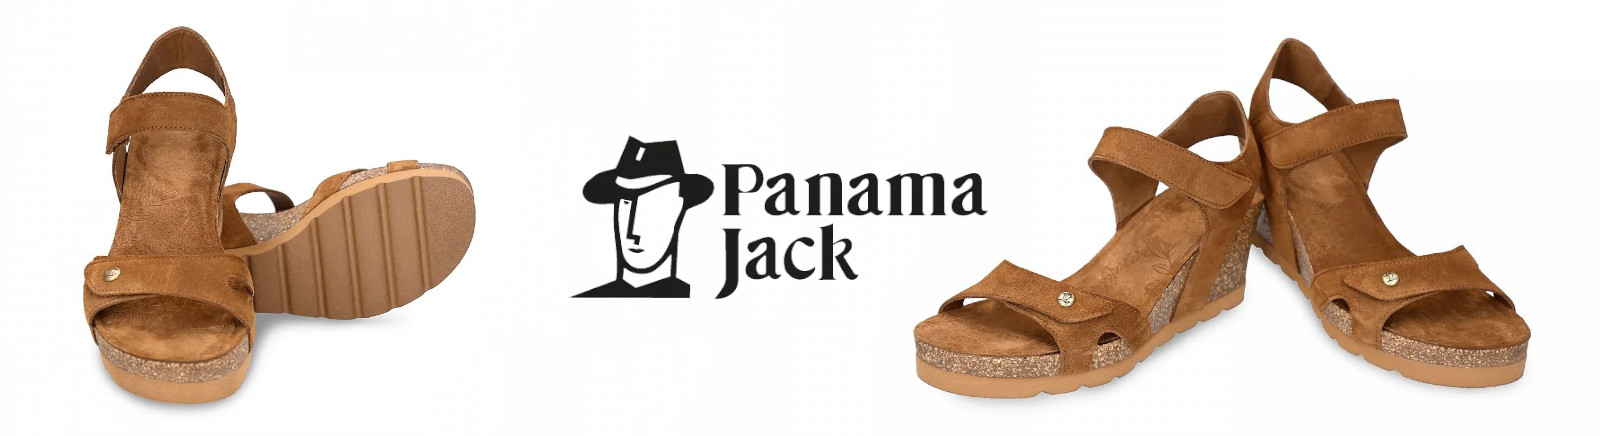 Prange: Panama Jack Chelsea Boots für Damen online shoppen